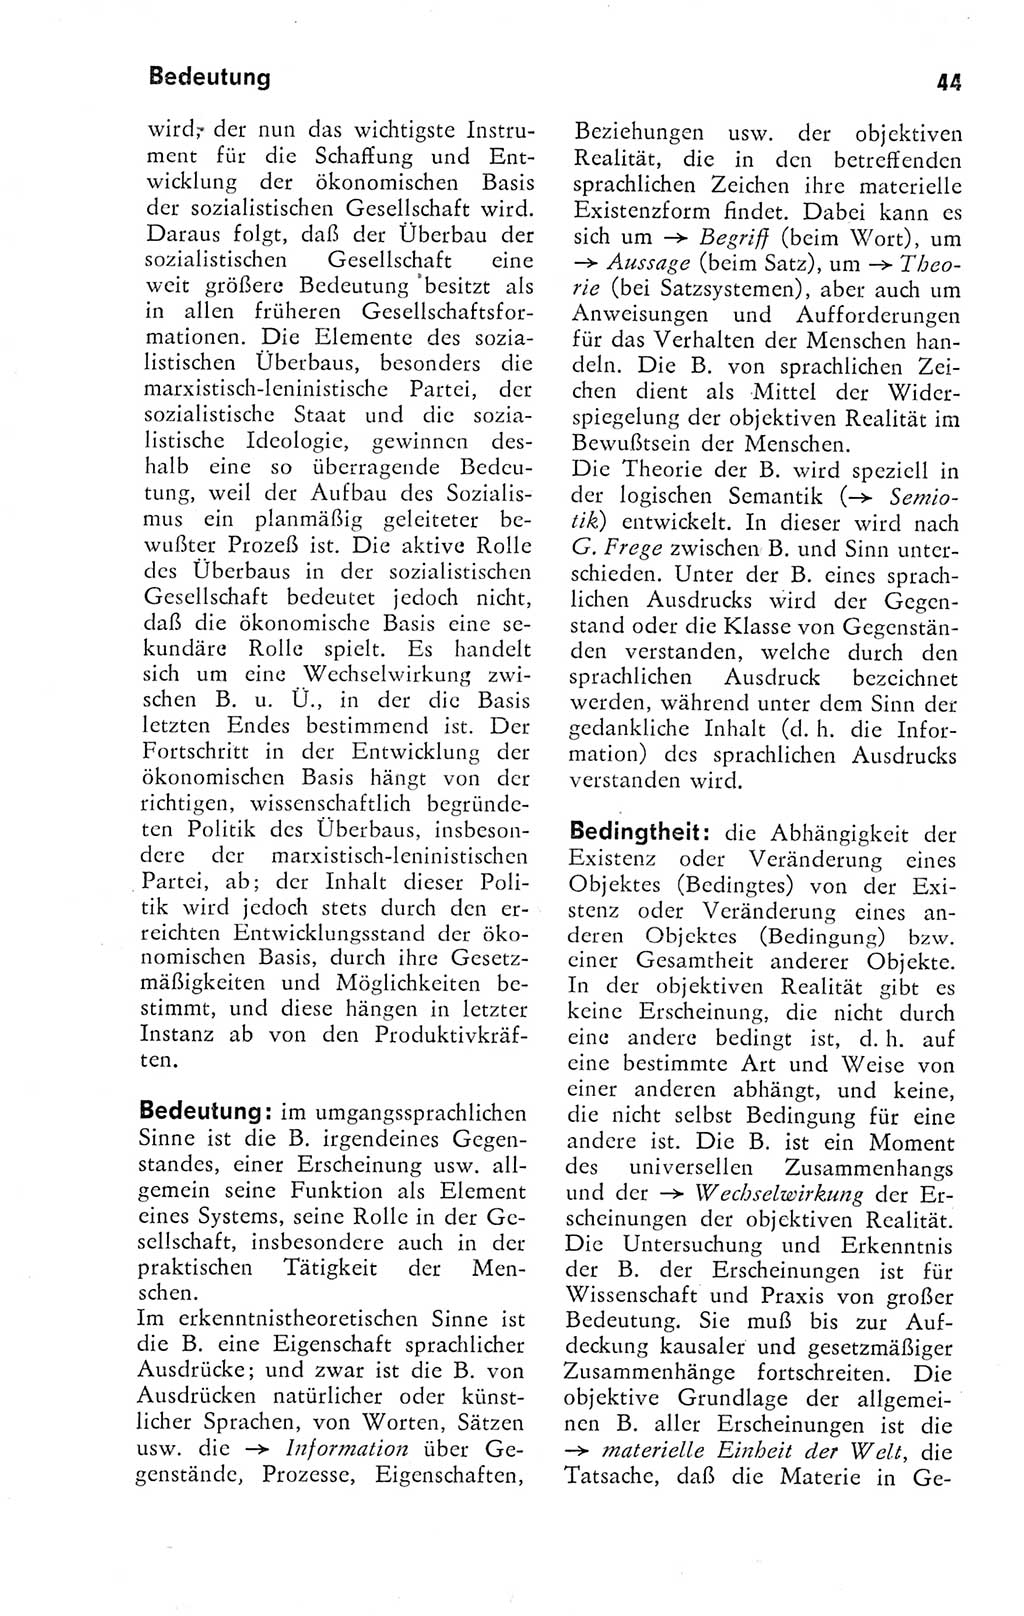 Kleines Wörterbuch der marxistisch-leninistischen Philosophie [Deutsche Demokratische Republik (DDR)] 1974, Seite 44 (Kl. Wb. ML Phil. DDR 1974, S. 44)